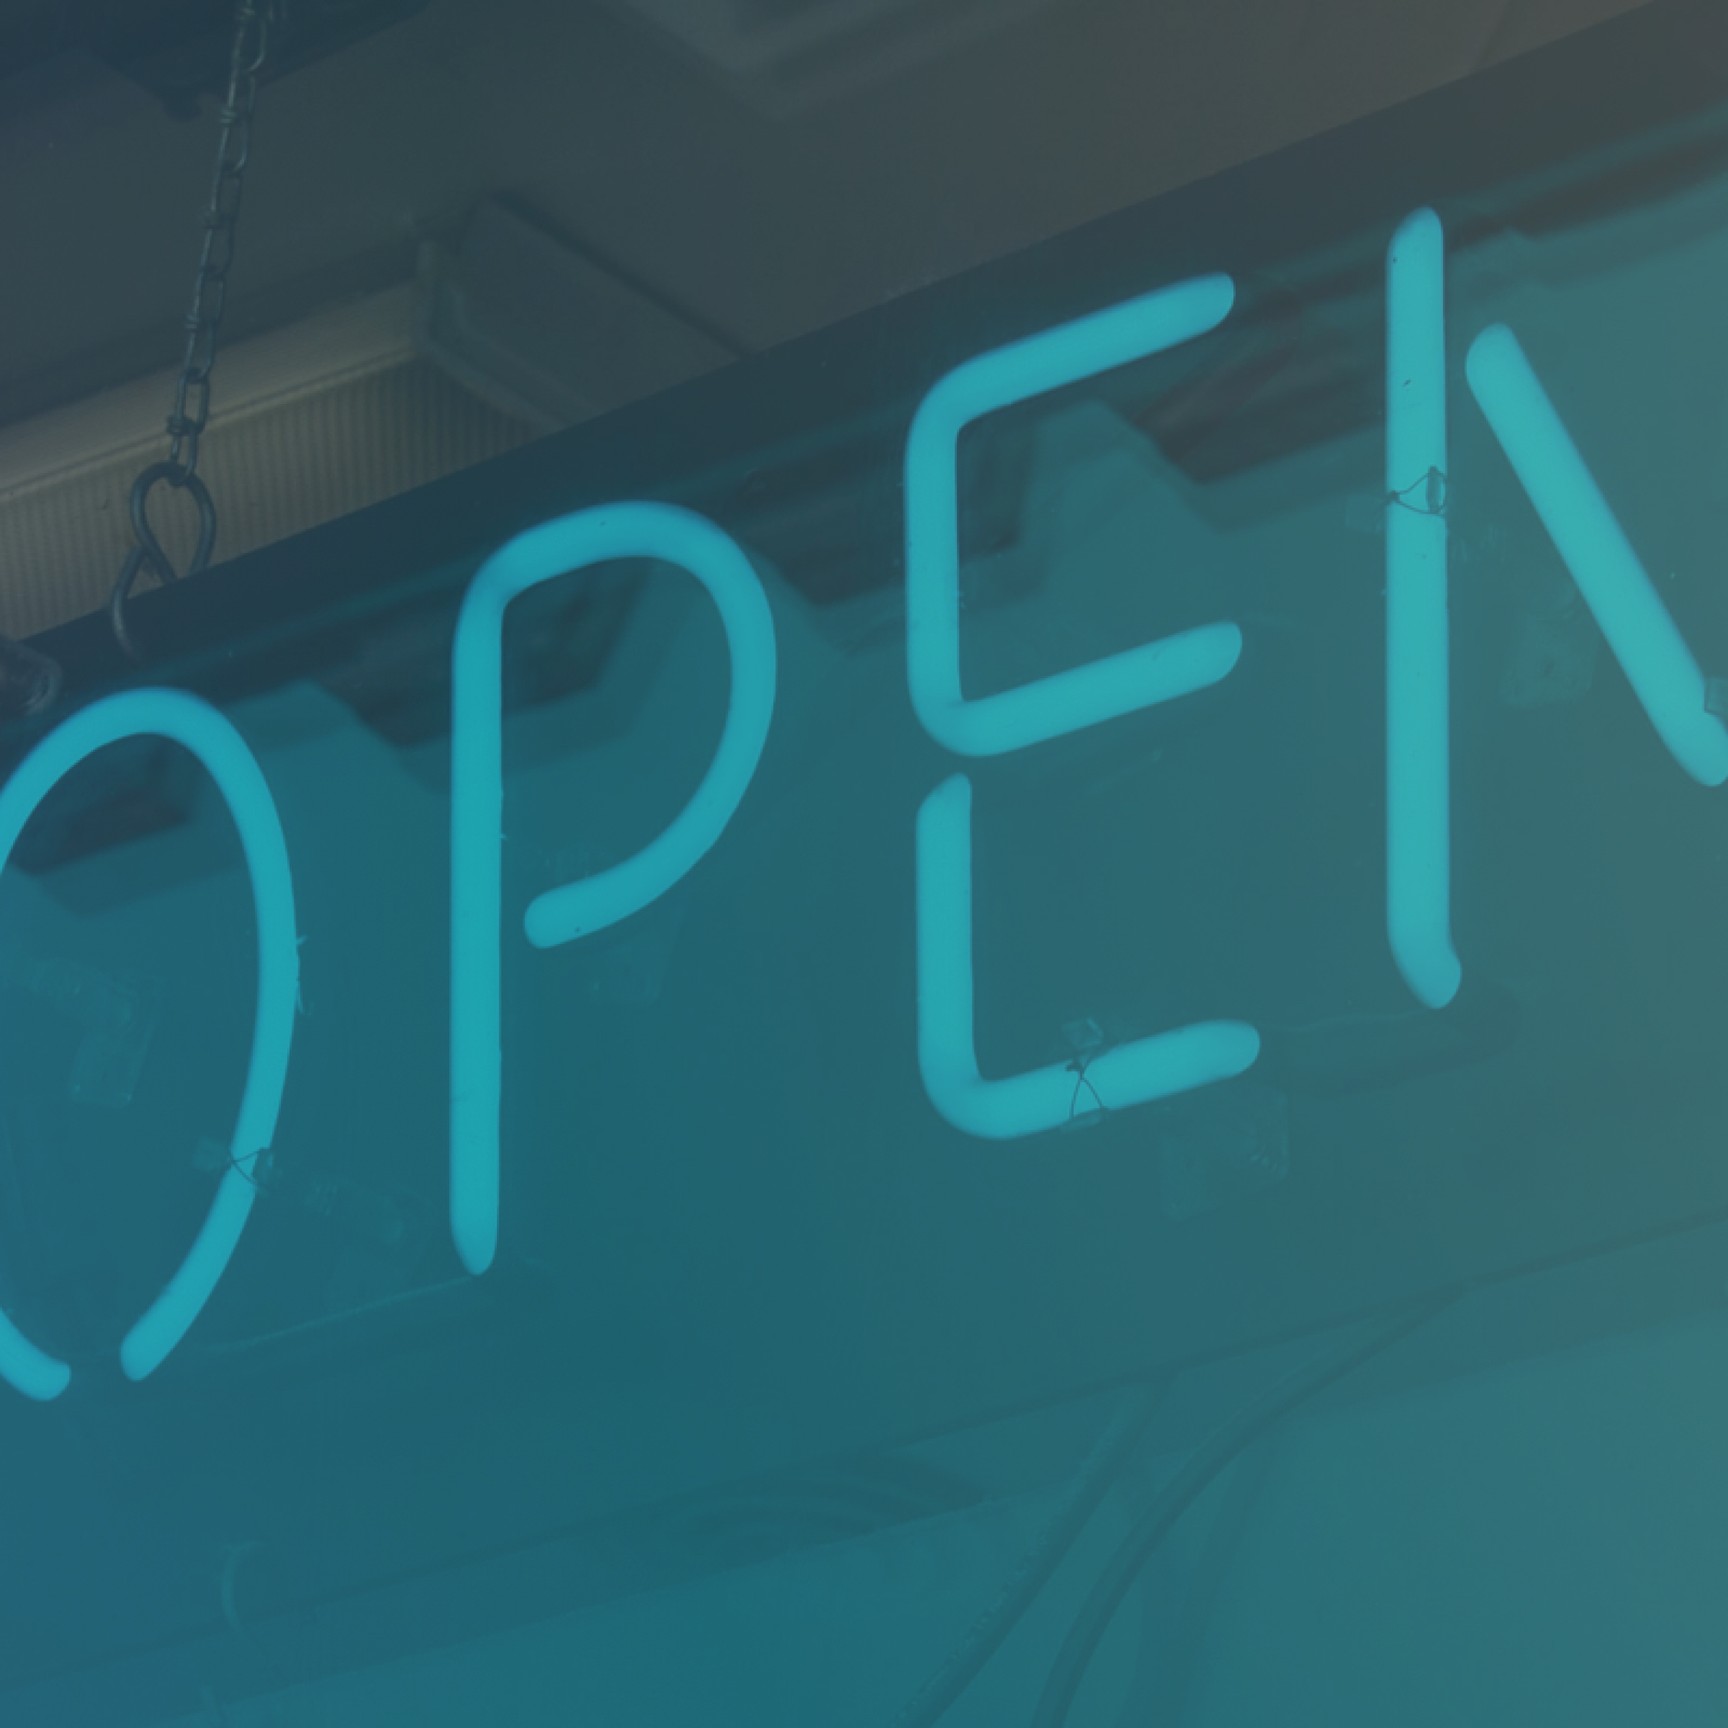 An "open" sign